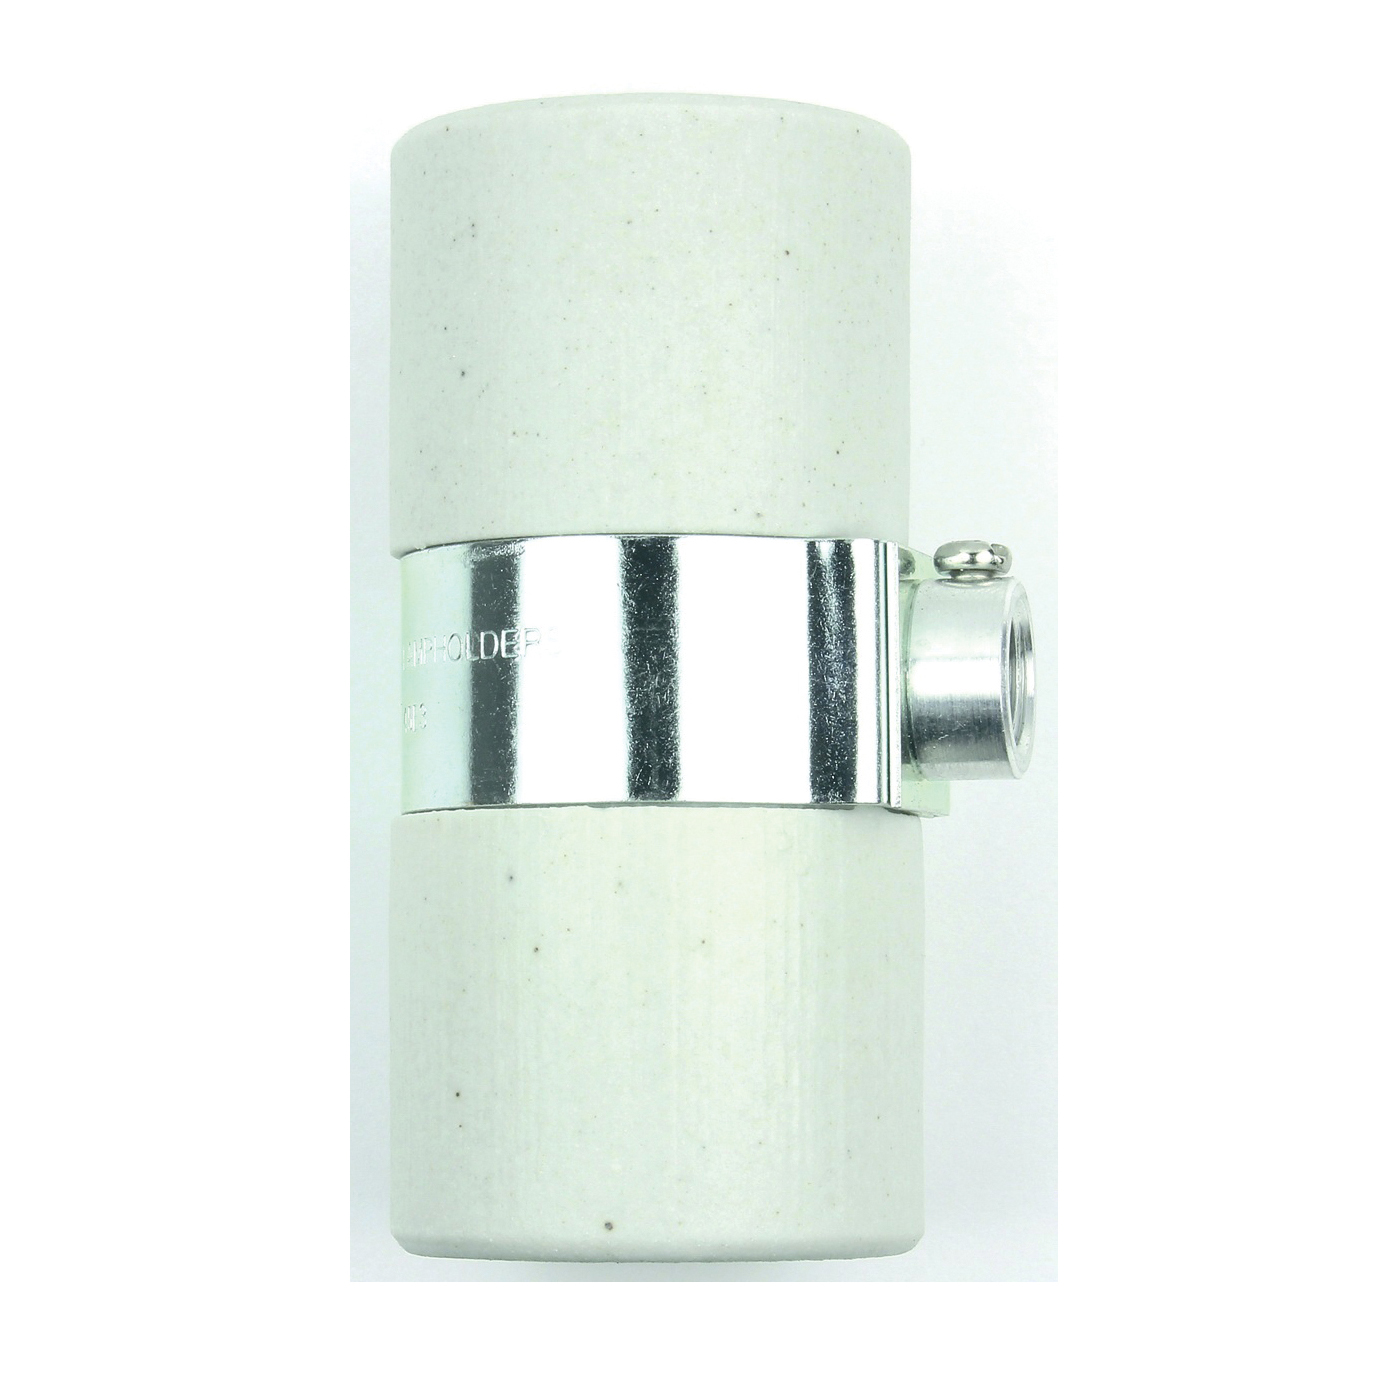 60580 Lamp Socket, 600 V, 660 W, Porcelain Housing Material, White